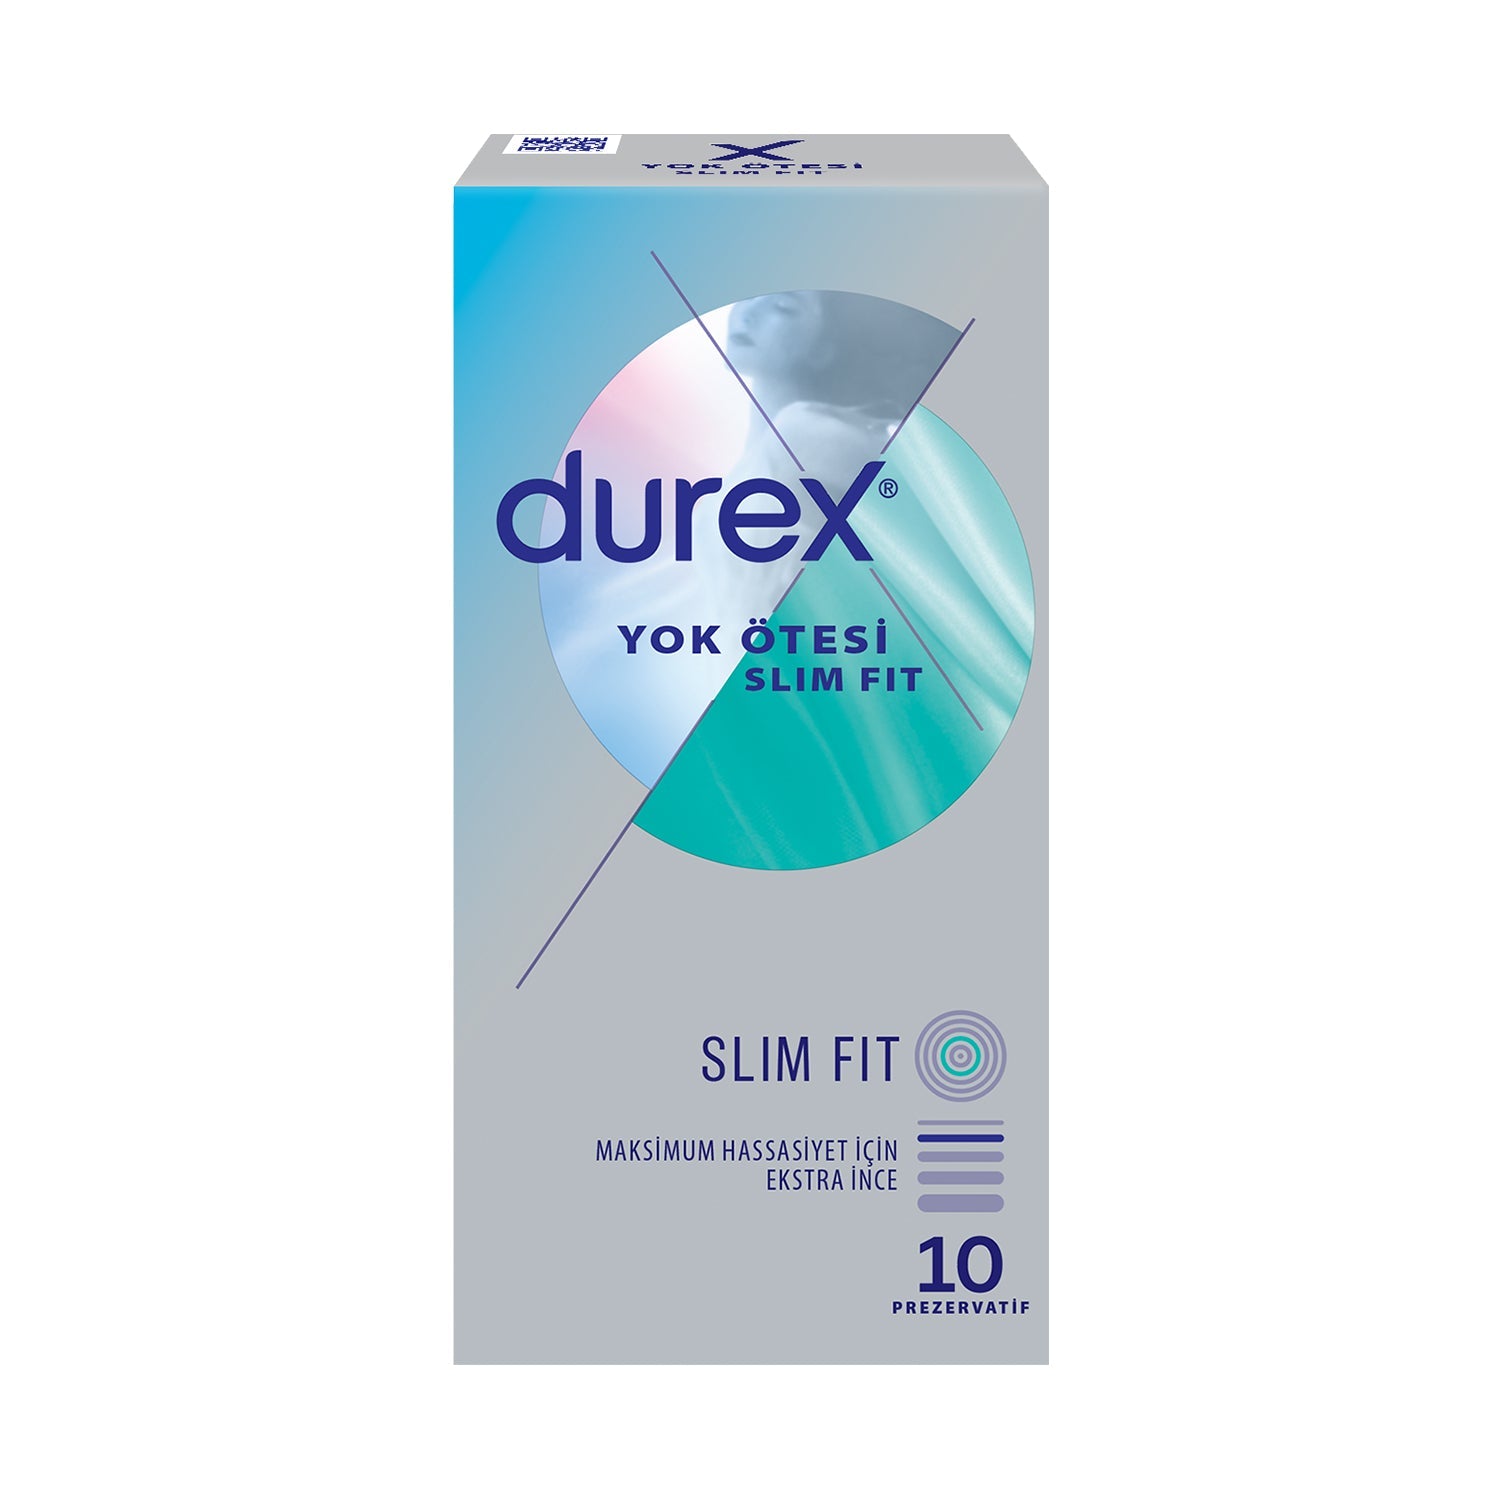 Durex Yok Ötesi Slim Fit 10’lu Prezervatif